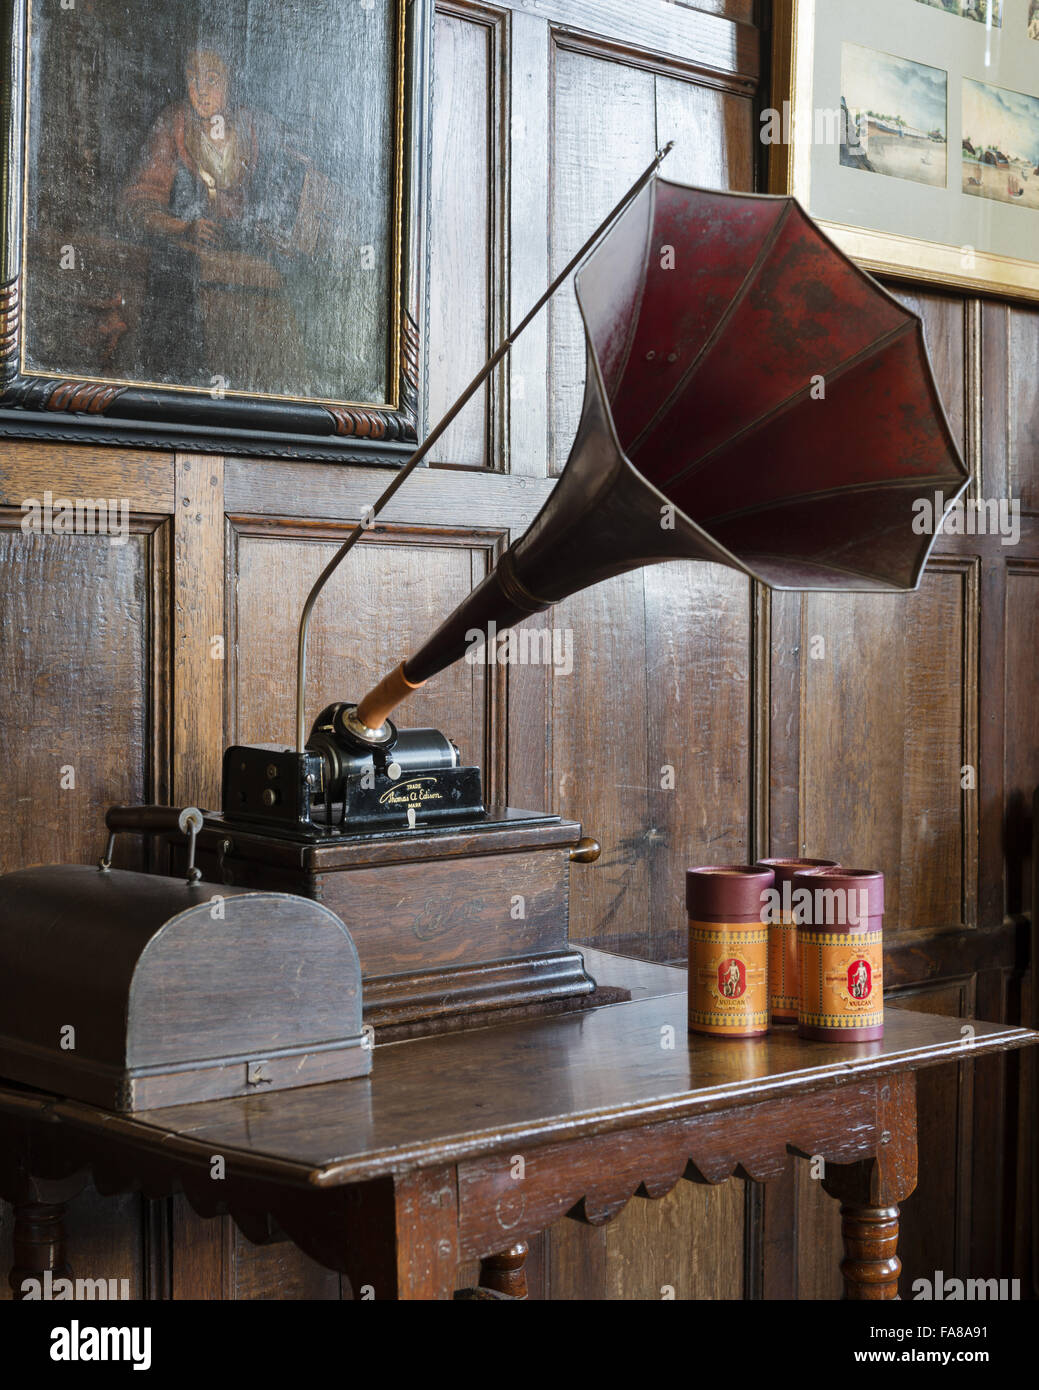 1912 Thomas Edison un phonogramme dans le salon à Bateman's, East Sussex. Bateman's était la maison de l'écrivain Rudyard Kipling de 1902 à 1936. Banque D'Images